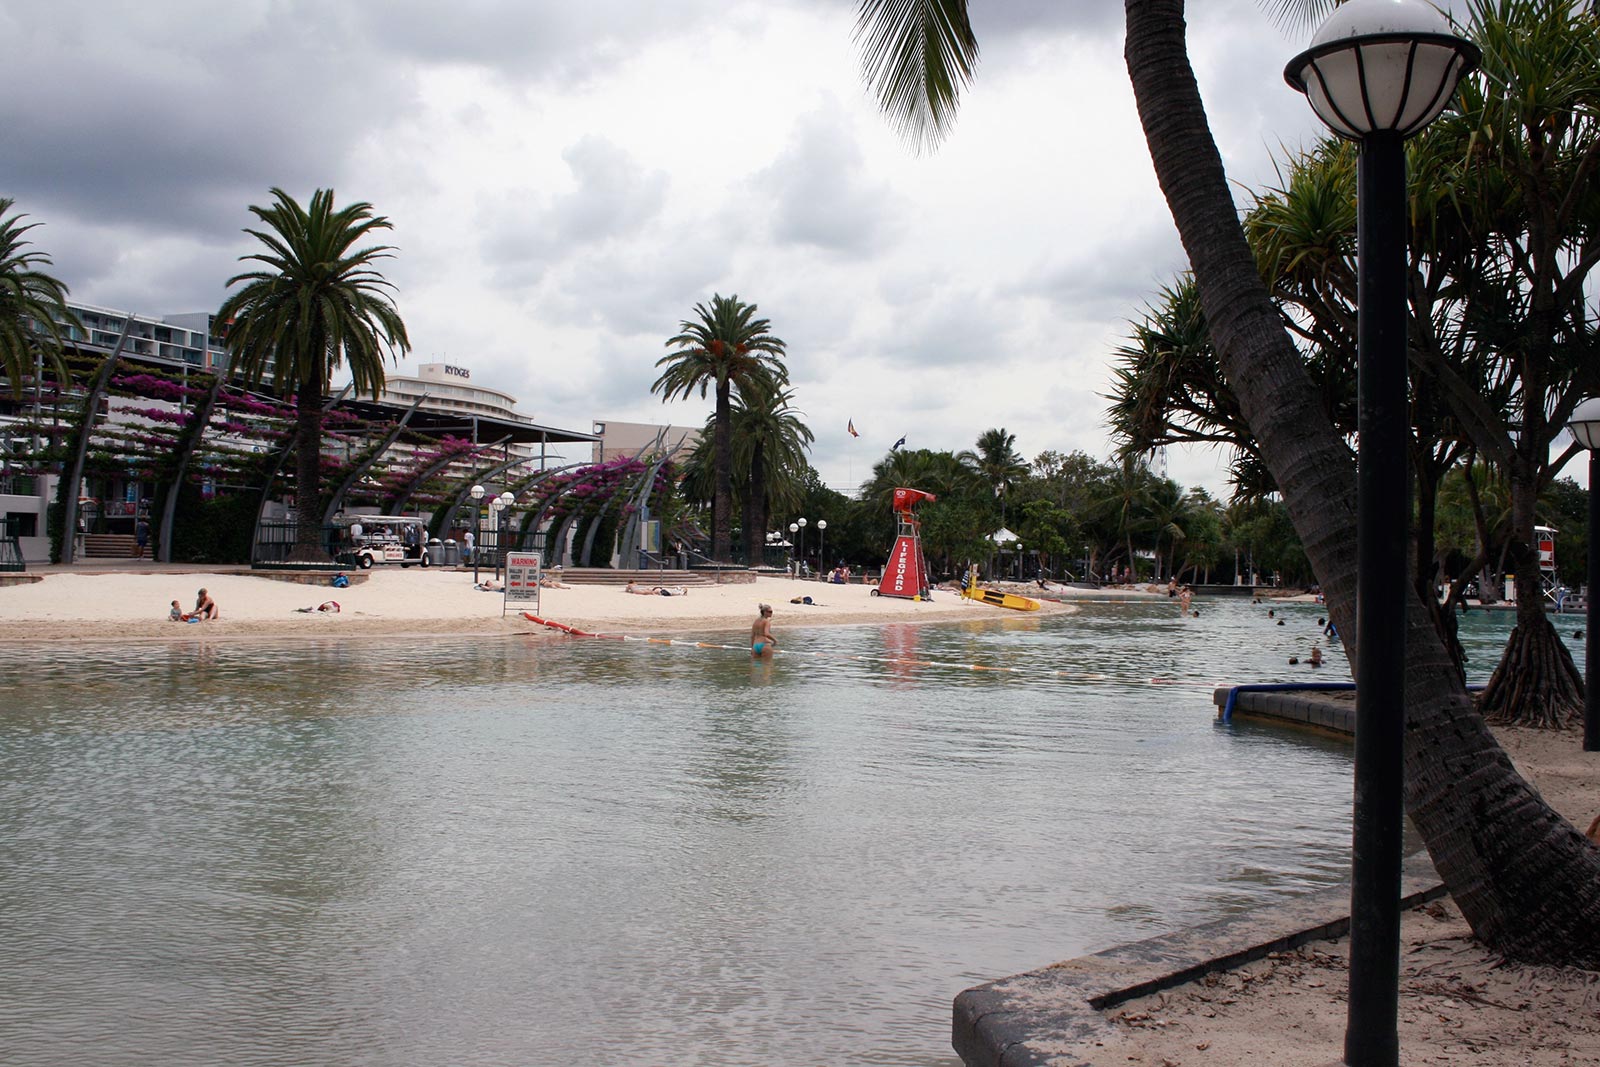 Sehenswürdigkeiten in Brisbane, Australien: Sout Bank City Beach